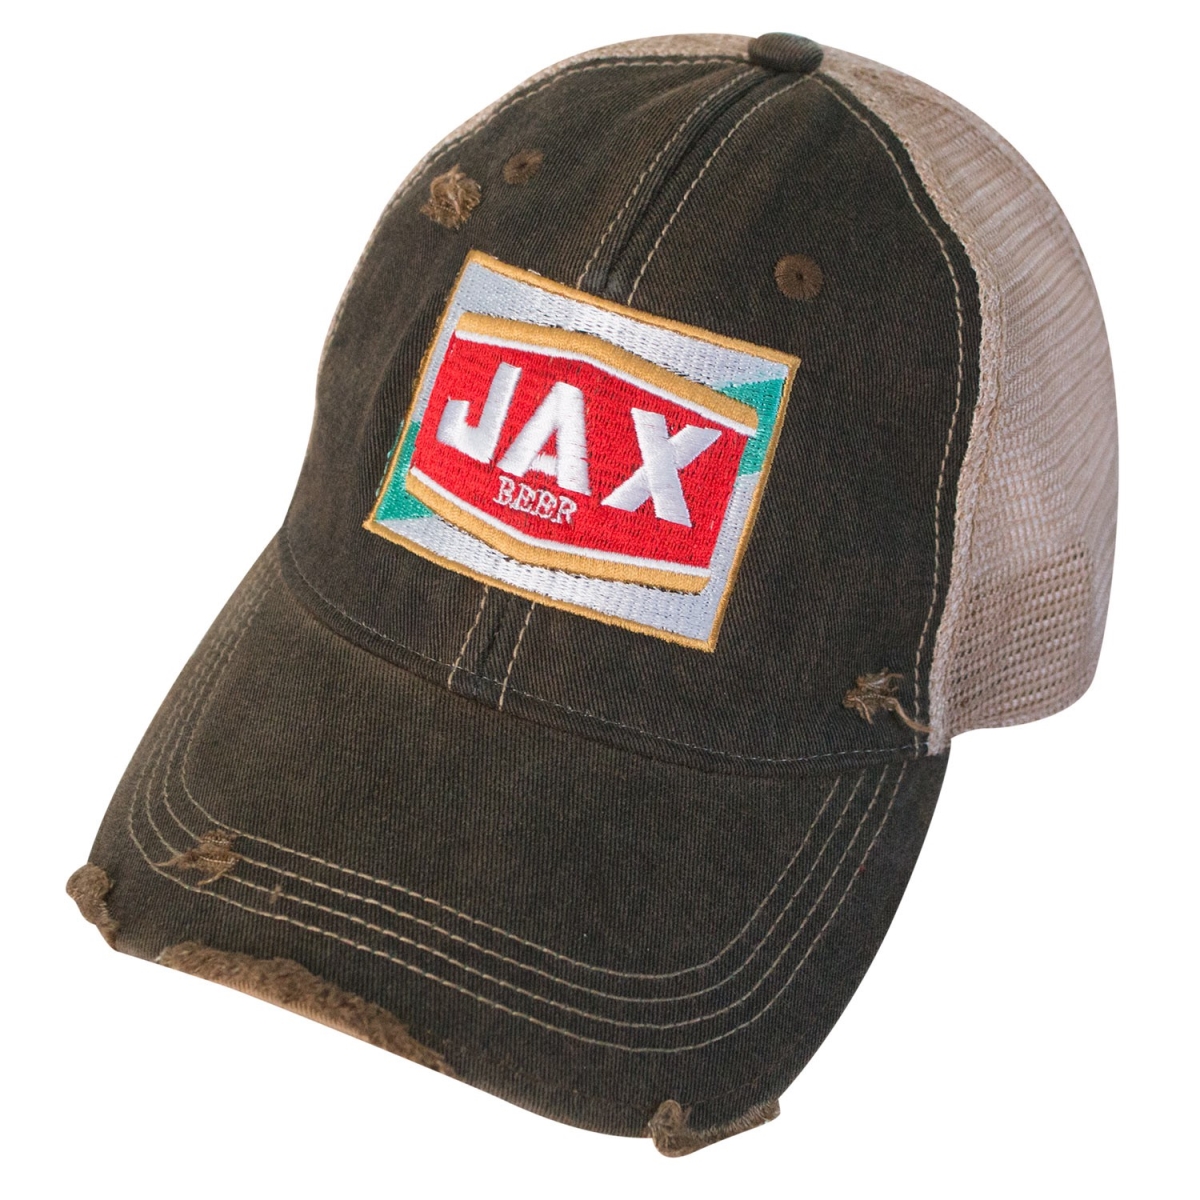 Picture of Jax 45530 Jax Beer Vintage Mesh Hat